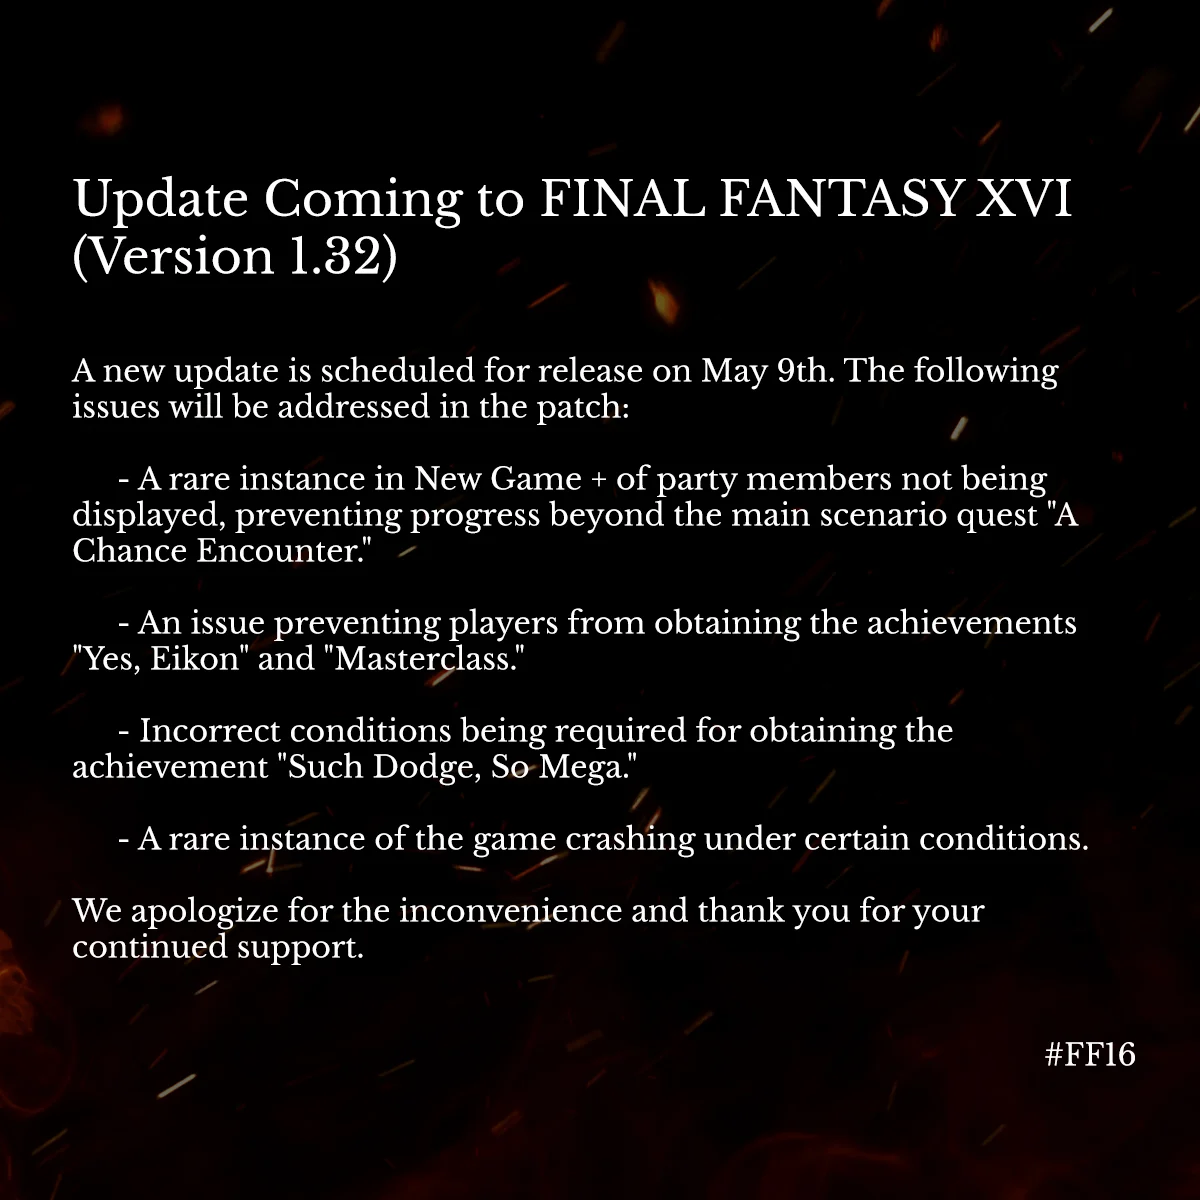 Final Fantasy 16 получит новый патч в мае - фото 1